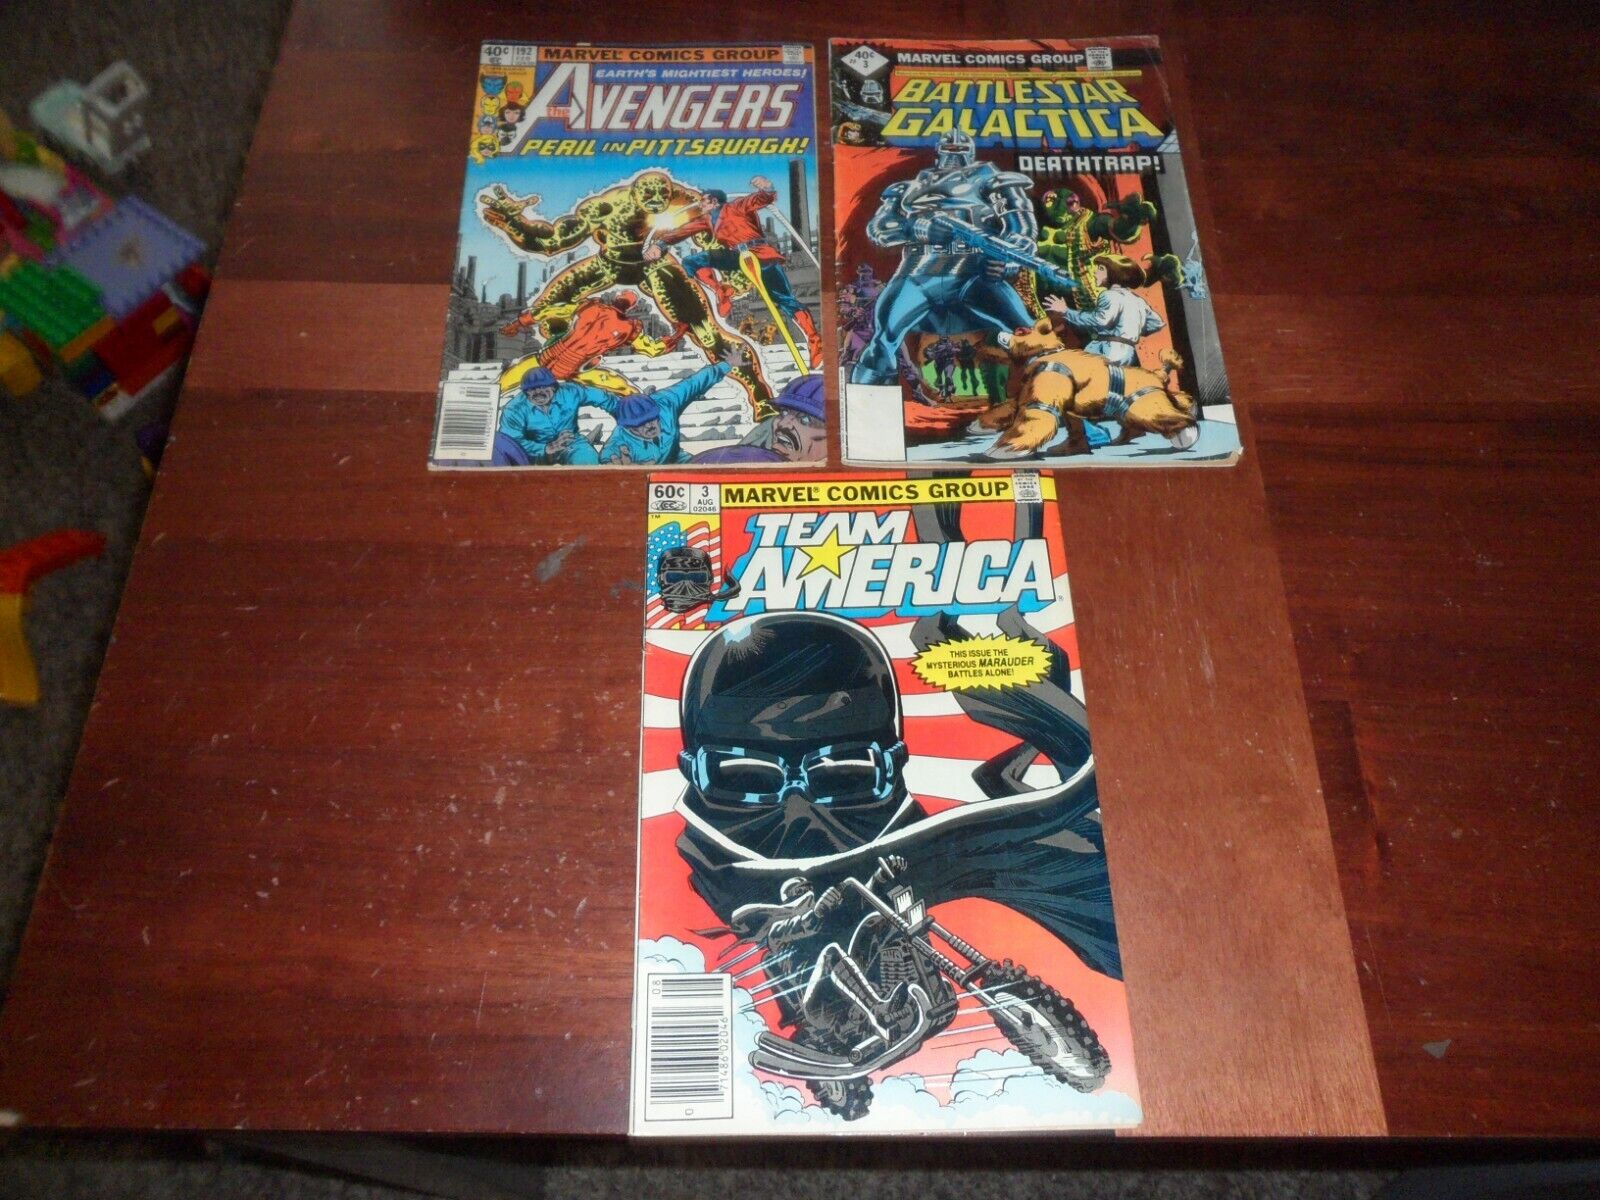 Lot of 3 Marvel Comic Books Avengers 192 Team America #3 Battlestar Galactica #3